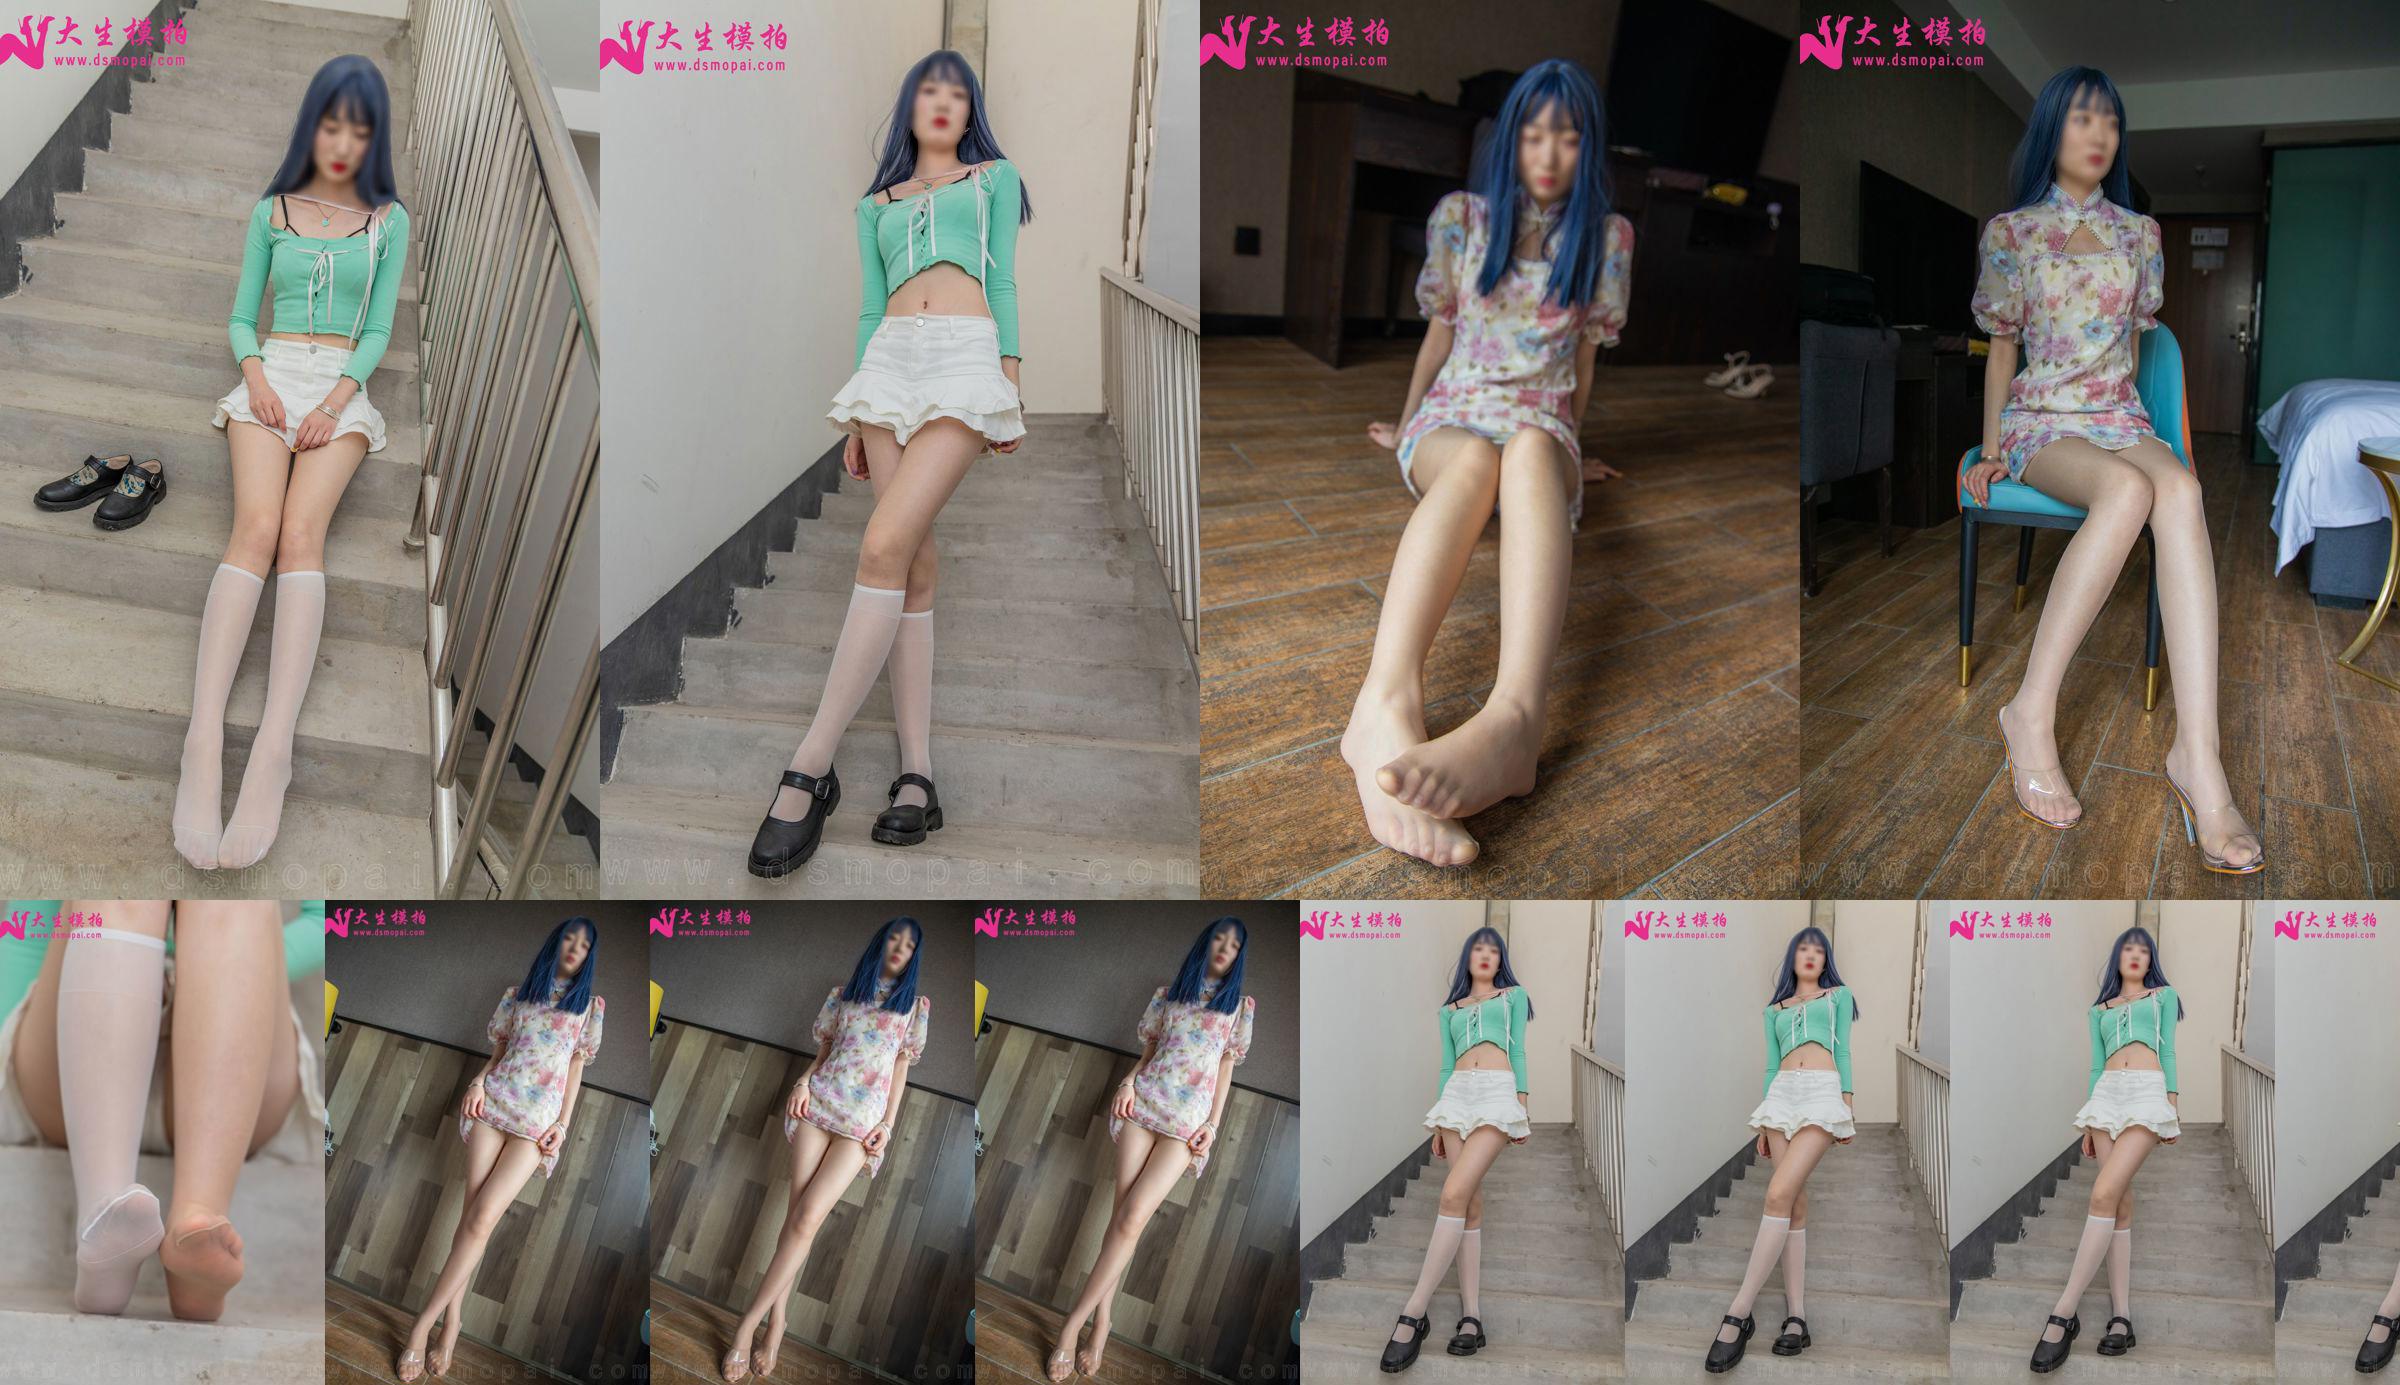 [Съемка модели Dasheng] NO.231 Lili Perfect Long Legs Photo Set No.c88119 Страница 1